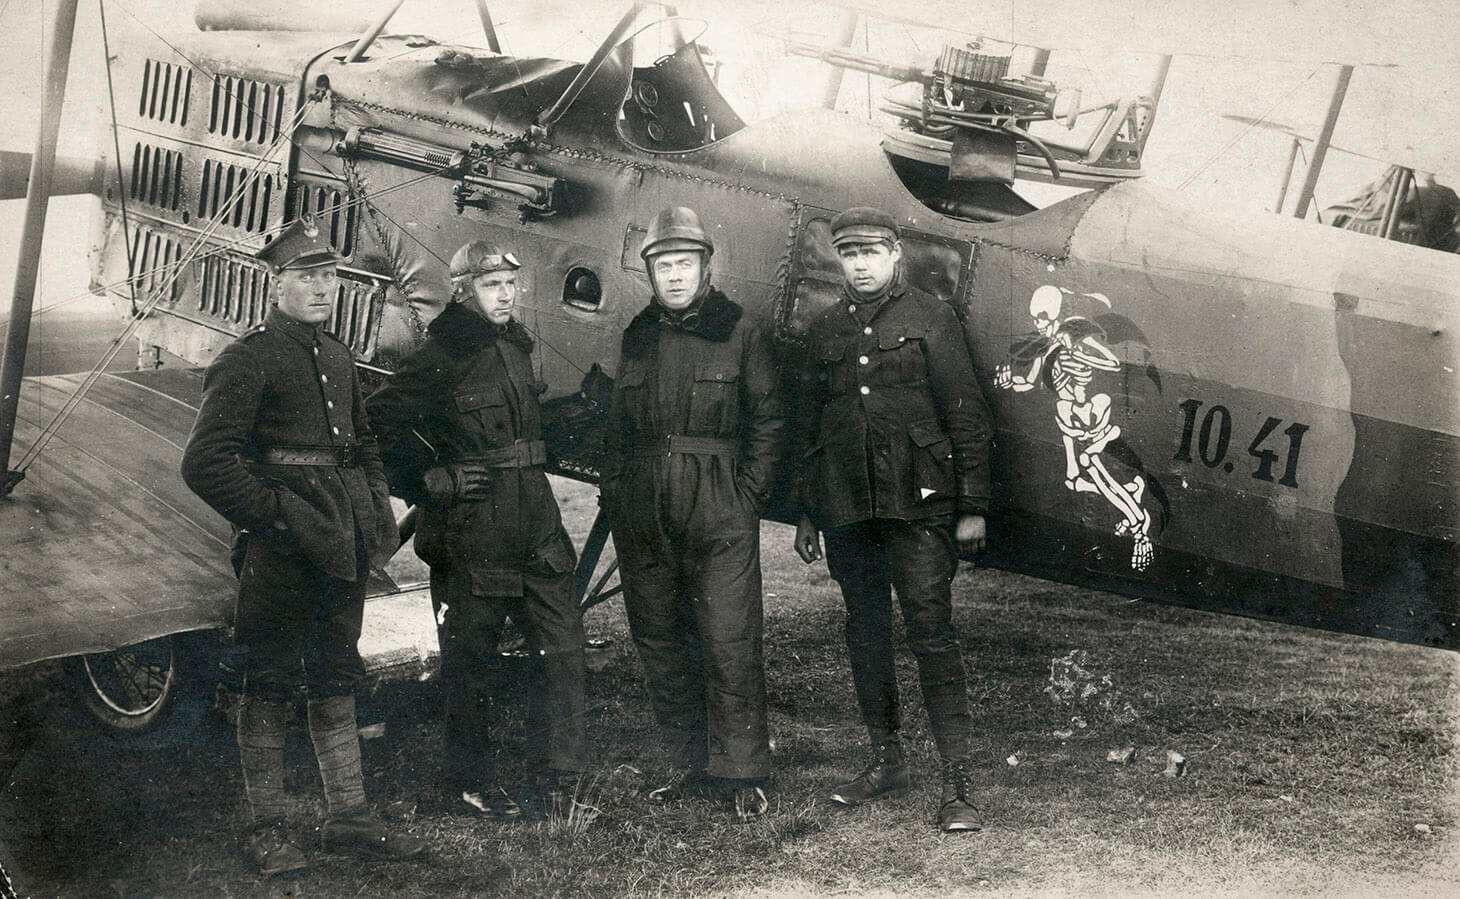 Czarno-białe zdjęcie czterech pilotów na tle samolotu typu Breguet.  Na pierwszym planie, w rzędzie pokazani są w pełnych planach: pierwszy od lewej, żołnierz w mundurze polowym, w lekkim zwrocie w prawo, z prawa ręką w kieszeni spodni. Drugi od lewej stoi w podobnym ustawieniu pilot w kombinezonie lotniczym i pilotce na głowie, podpiera się prawą ręką pod bok. Trzeci od lewej, ustawiony na wprost obiektywu pozuje sierżant Toryślak, w kombinezonie lotniczym, kasku na głowie i z rękami w kieszeniach spodni kombinezonu. Czwarty od lewej, porucznik Ratomski, w kurtce wojskowej, bryczesach i czapce na głowie, z opuszczonymi swobodnie rękami. Samolot będący tłem dla pozujących, skierowany jest w lewą stronę kadru i usytuowany jest równolegle do dolnej, dłuższej krawędzi zdjęcia. Prawa i lewa krawędź zdjęcia przycina nieco ogon samolotu i jego przód, tak że widoczny jest jedynie częściowo dolny płat skrzydeł, kratownica przysłaniająca silnik, kokpit, centralnie działo i fragment ogona. Na boku samolotu, przed ogonem namalowany jest w jasnym kolorze kościotrup i liczby: dziesięć, kropka czterdzieści jeden.